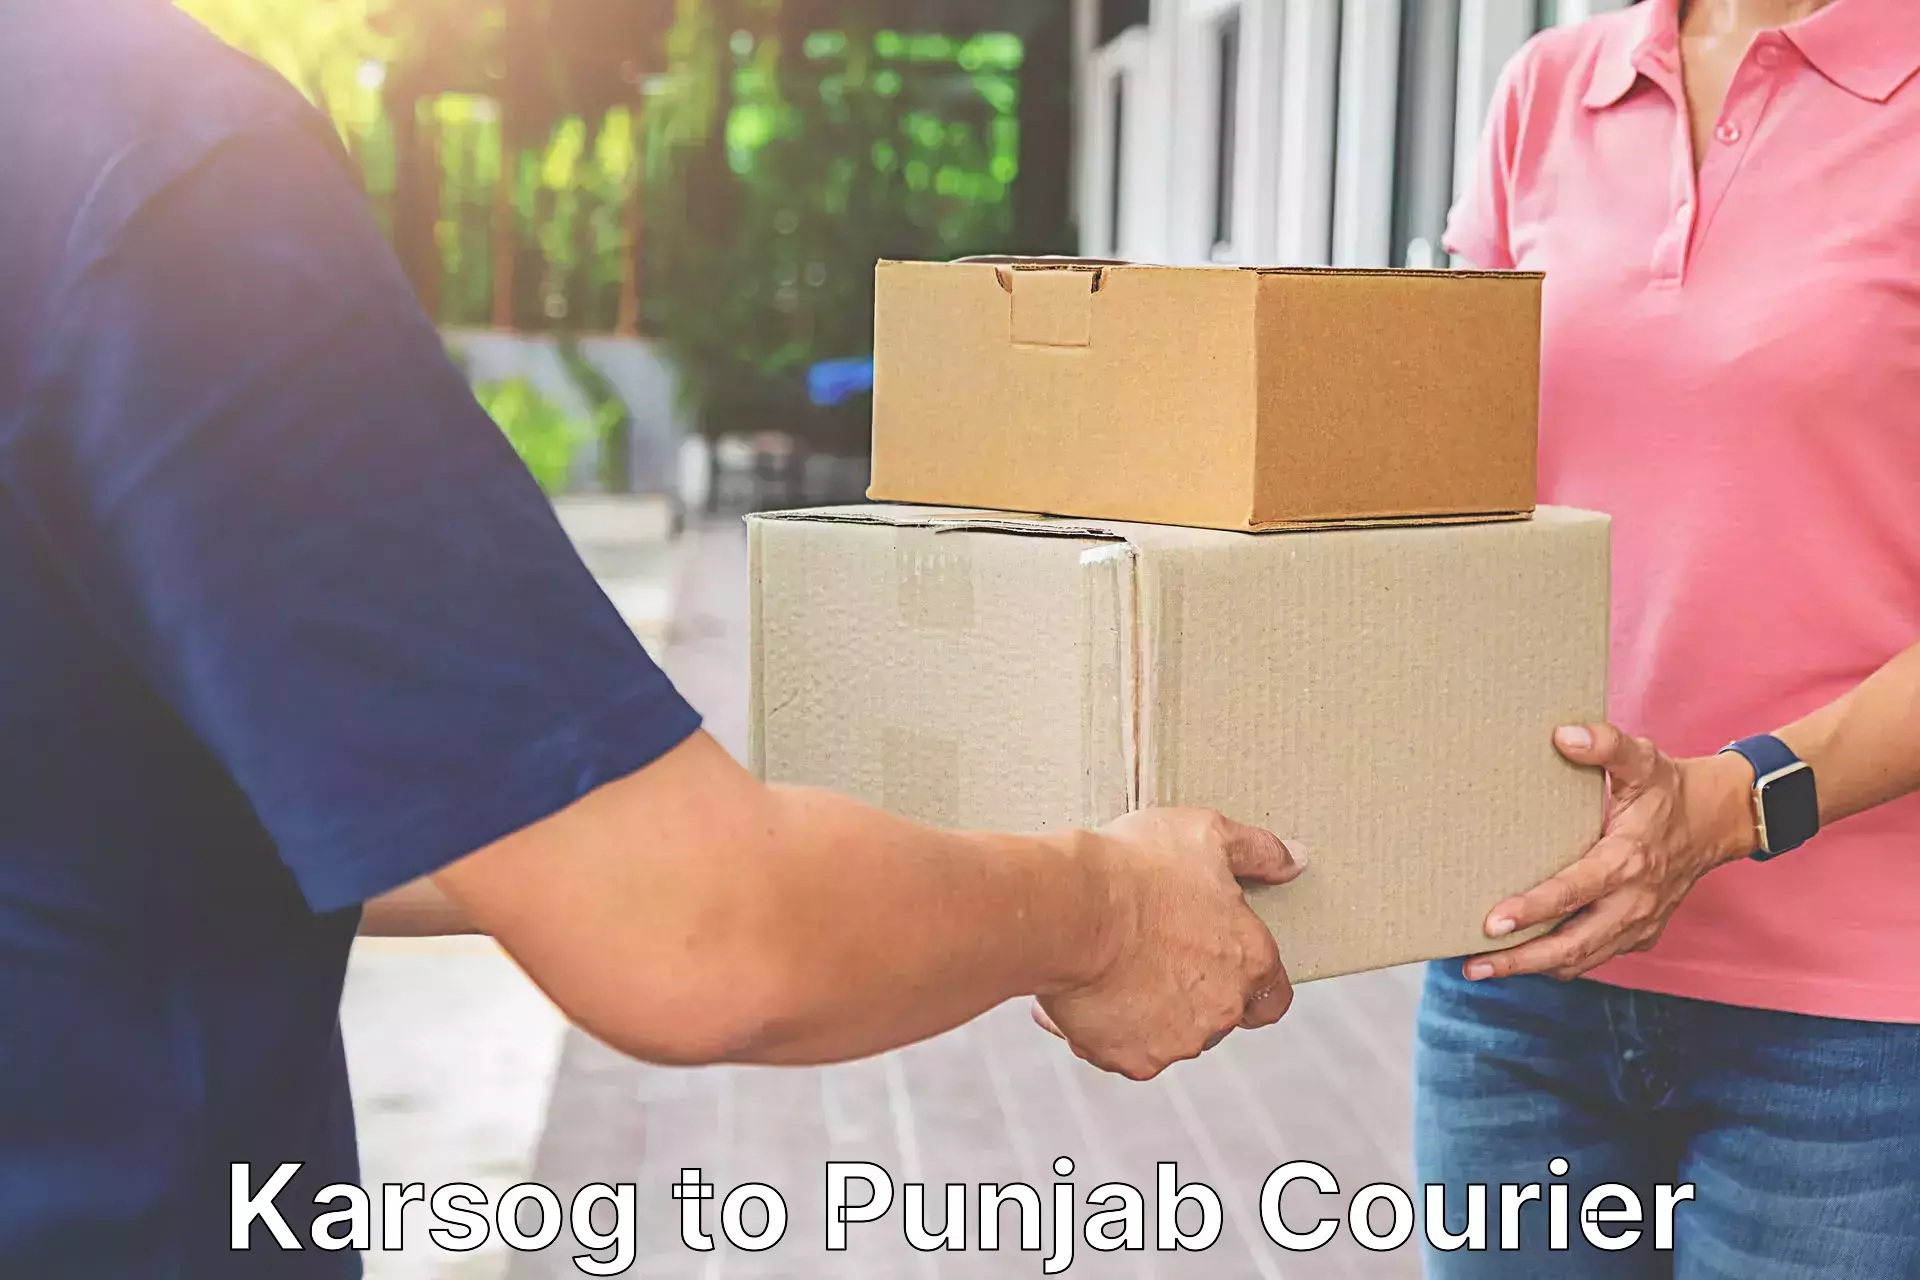 Courier service innovation Karsog to Punjab